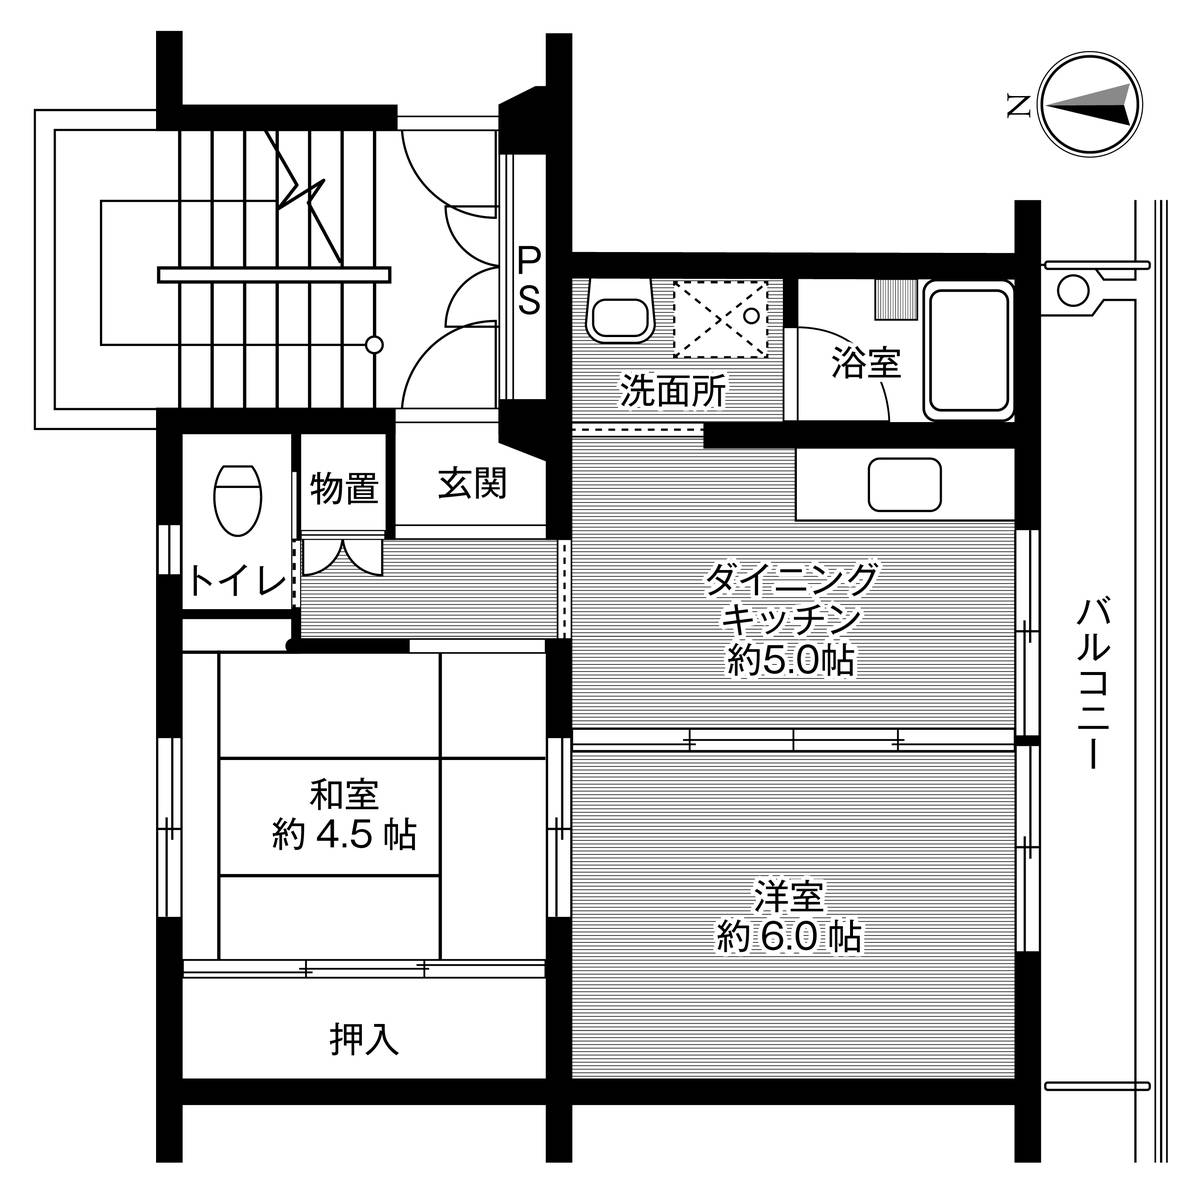 Sơ đồ phòng 2DK của Village House Saruhashi ở Otsuki-shi